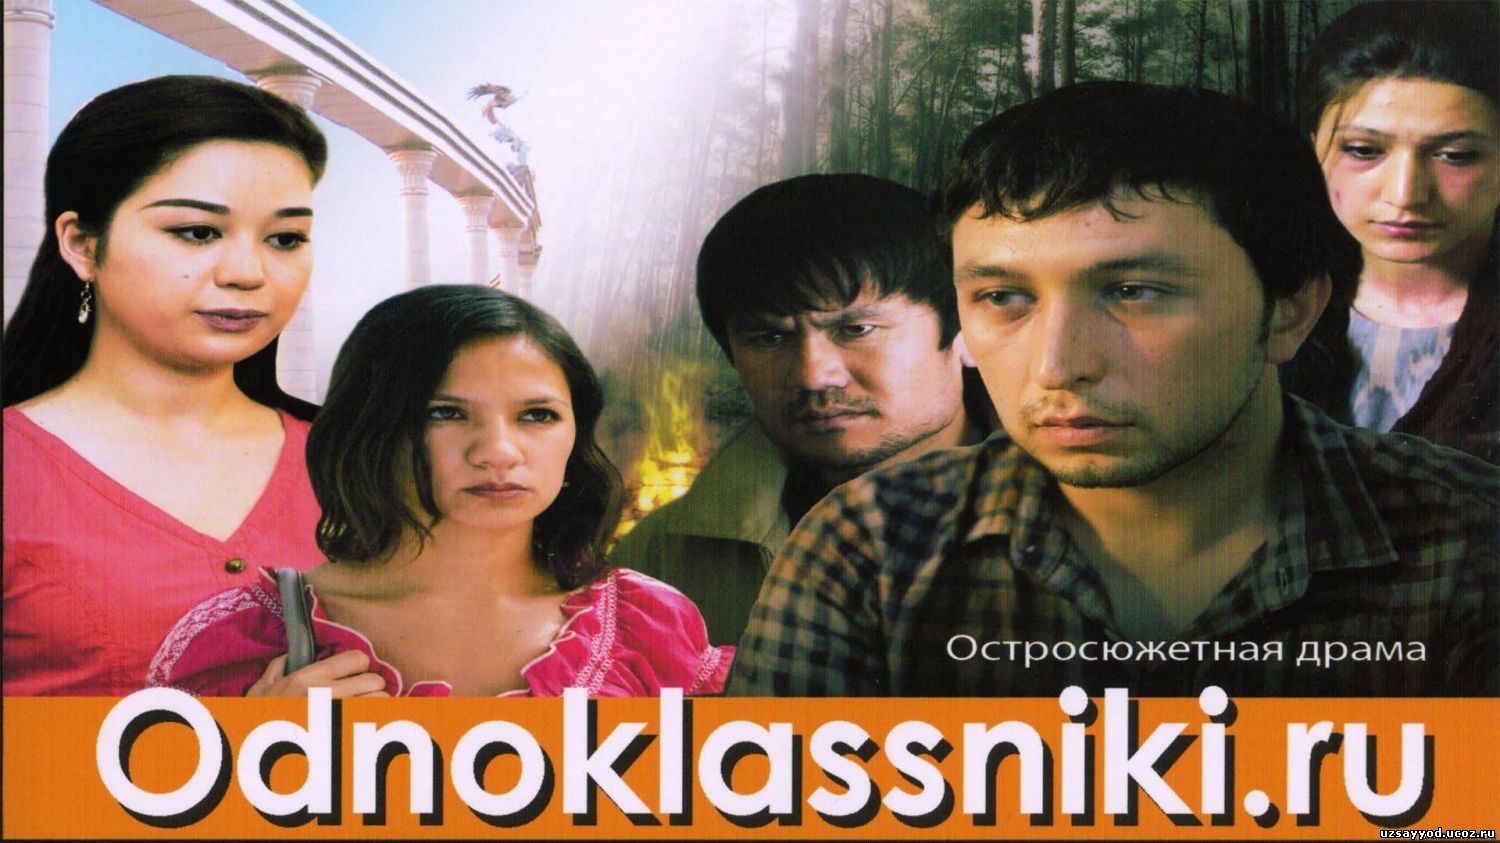 Odnoklassniki.ru / Одноклассники.ру (O'zbek kino 2013)